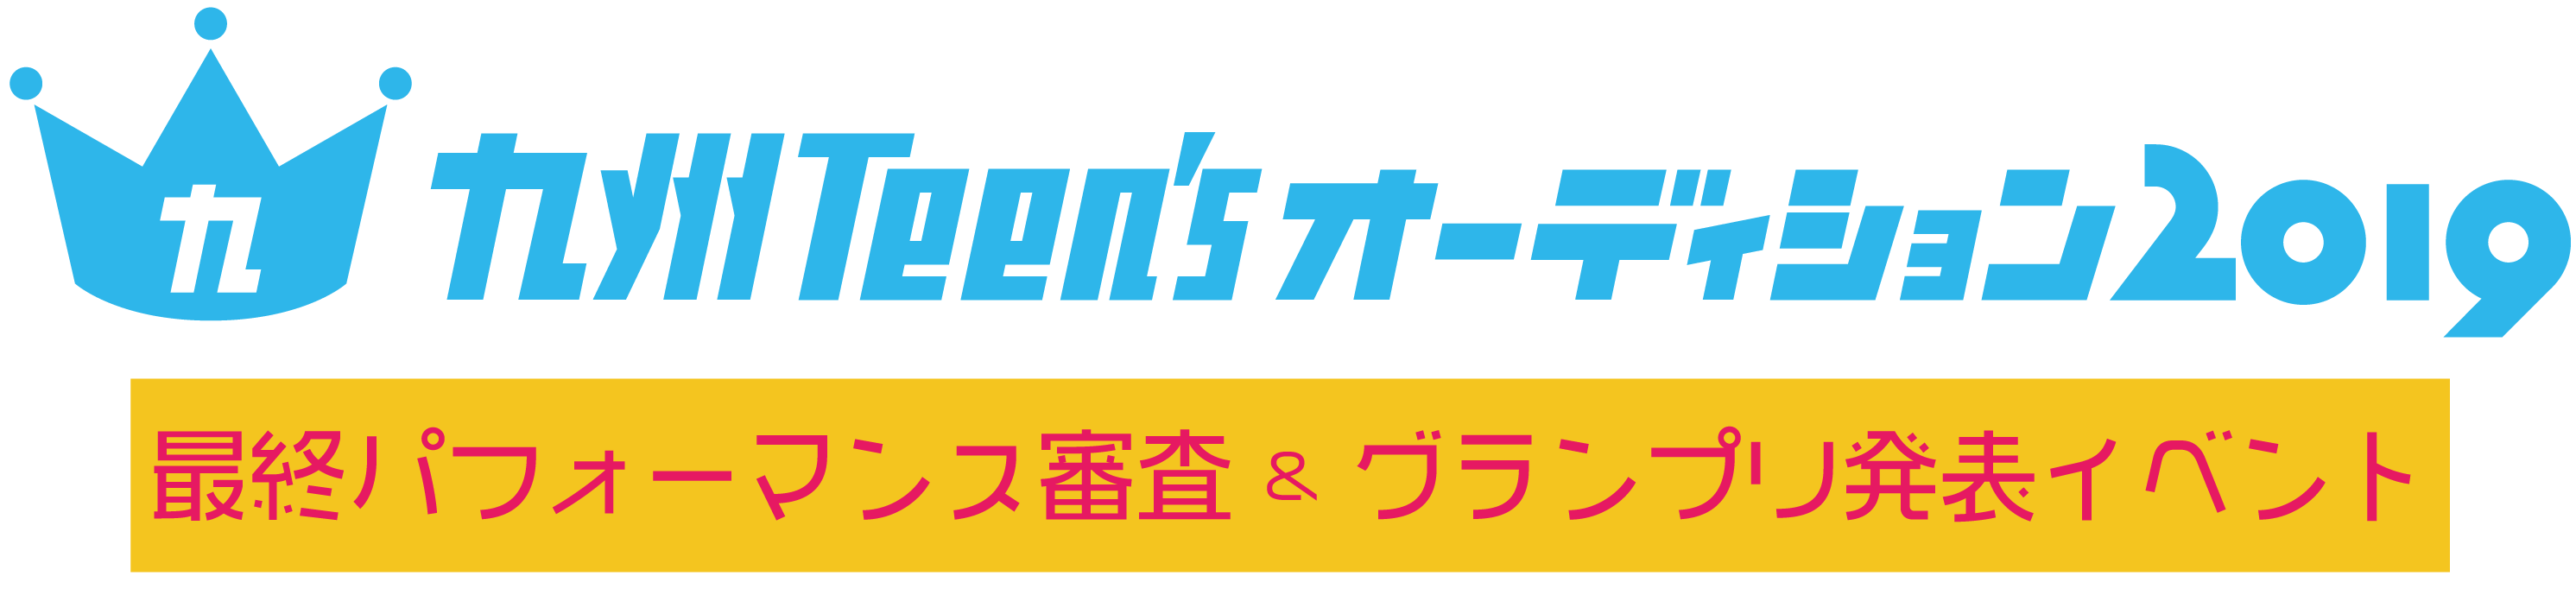 九州 Teen's オーディション 2019 最終パフォーマンス審査 & グランプリ発表イベント